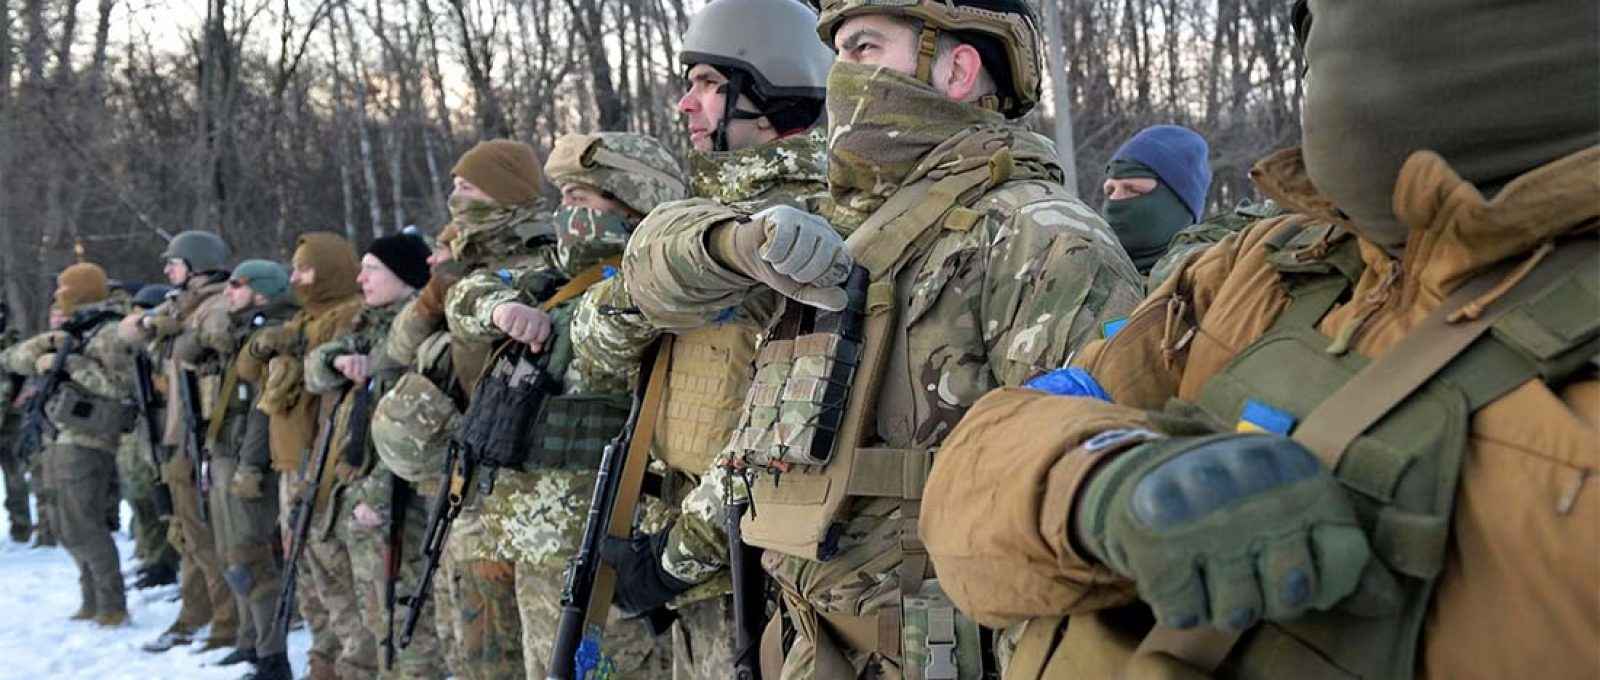 Membros do Regimento Azov em Kharkiv, Ucrânia. A unidade foi formada em 2014 por voluntários, muitos dos quais com tendências de extrema-direita, para combater os separatistas no leste do país (Sergey Bobok/AFP/Getty Images).